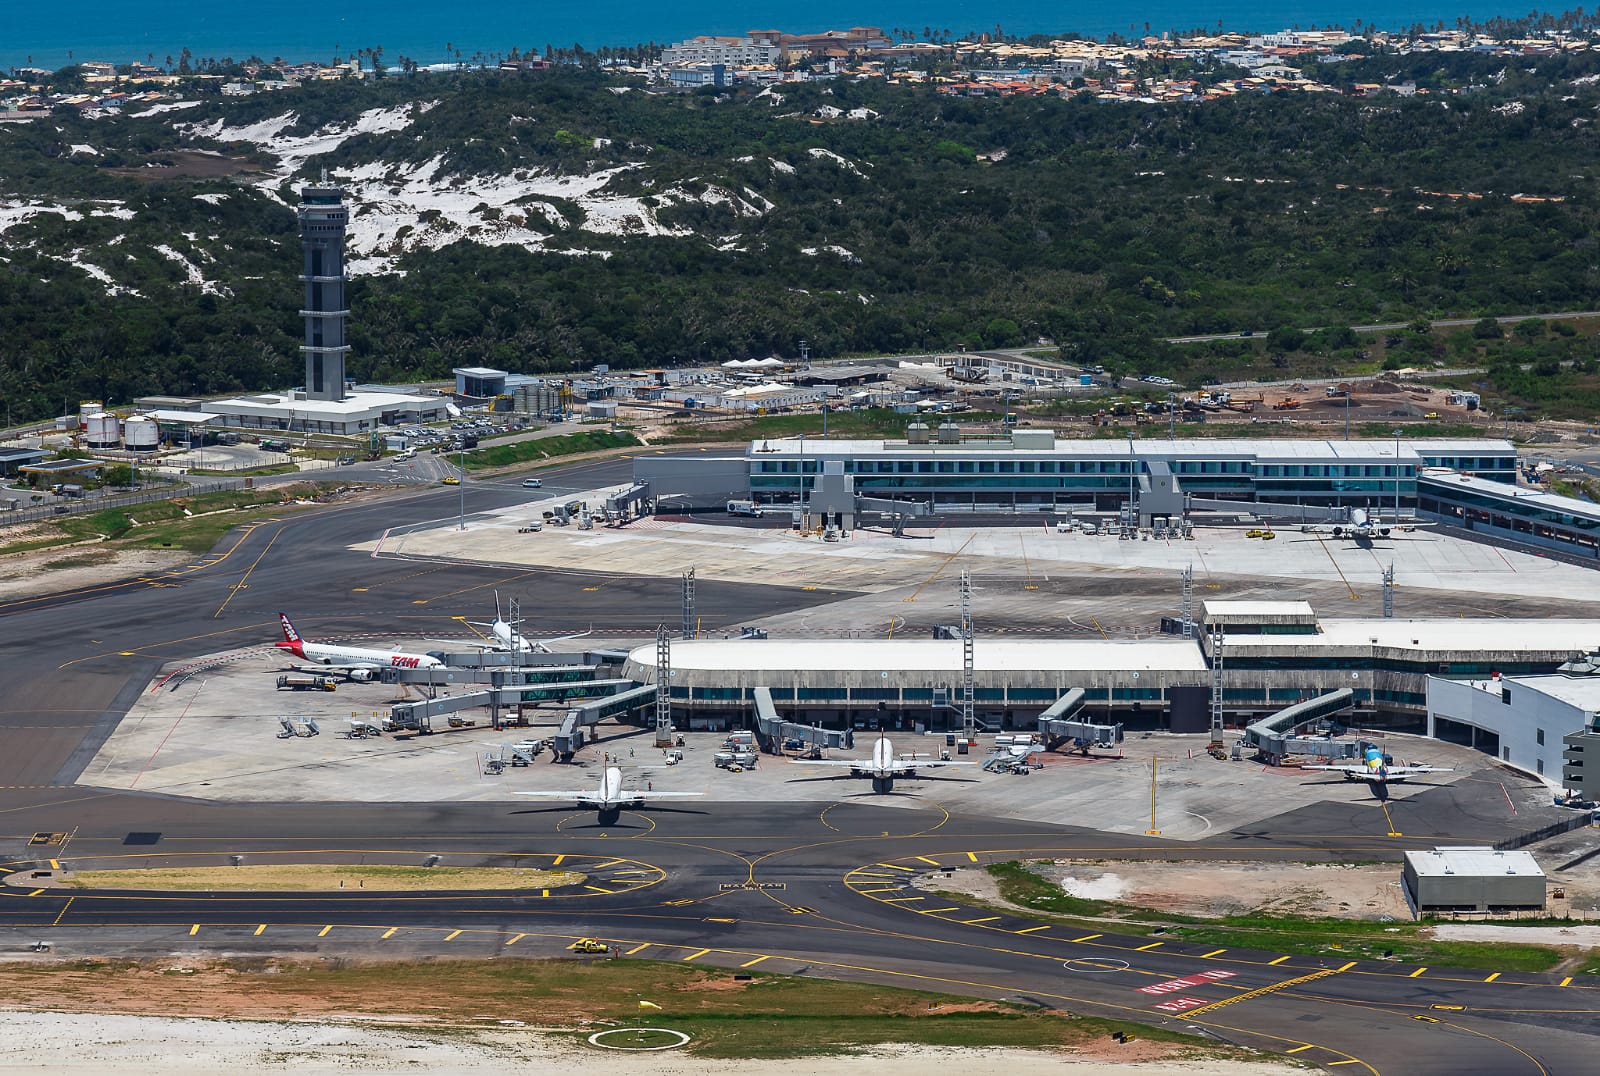 Voos ao estilo “chater” estão de volta para Portugal, com decolagem e aterrissagem no Salvador Bahia Airport